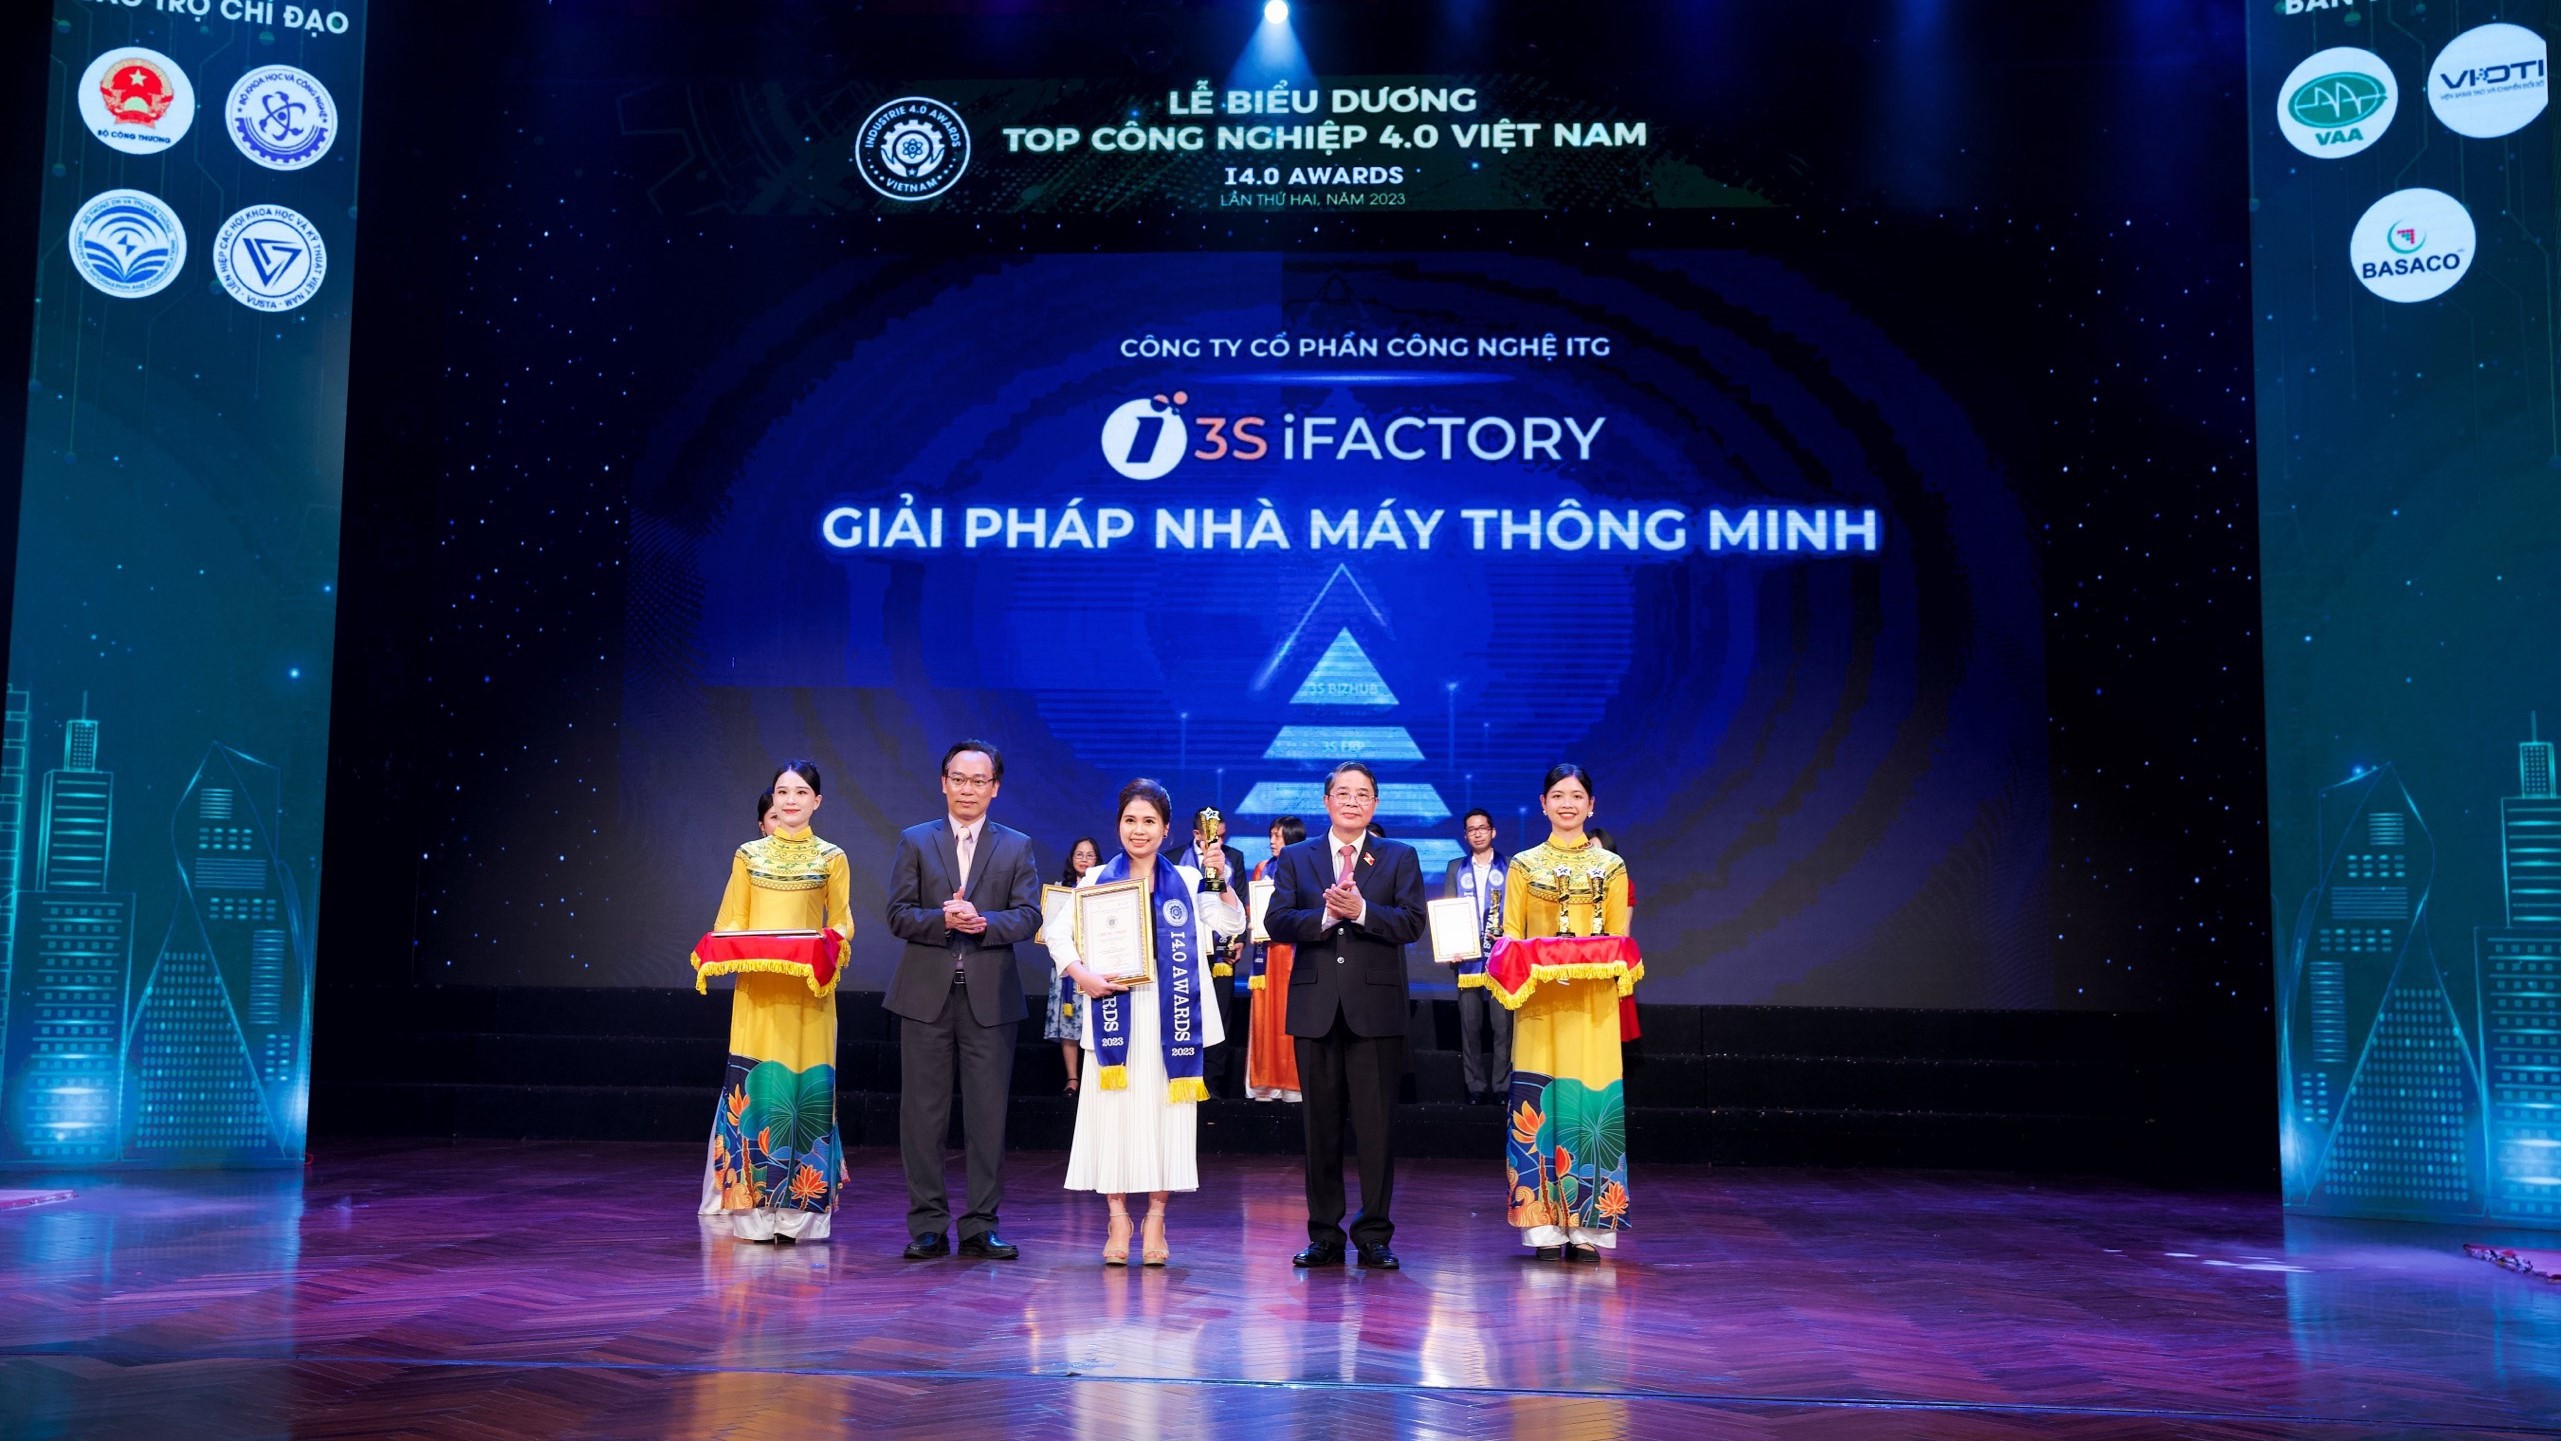 3S iFACTORY nhận giải thưởng Top Công nghiệp 4.0 Việt Nam